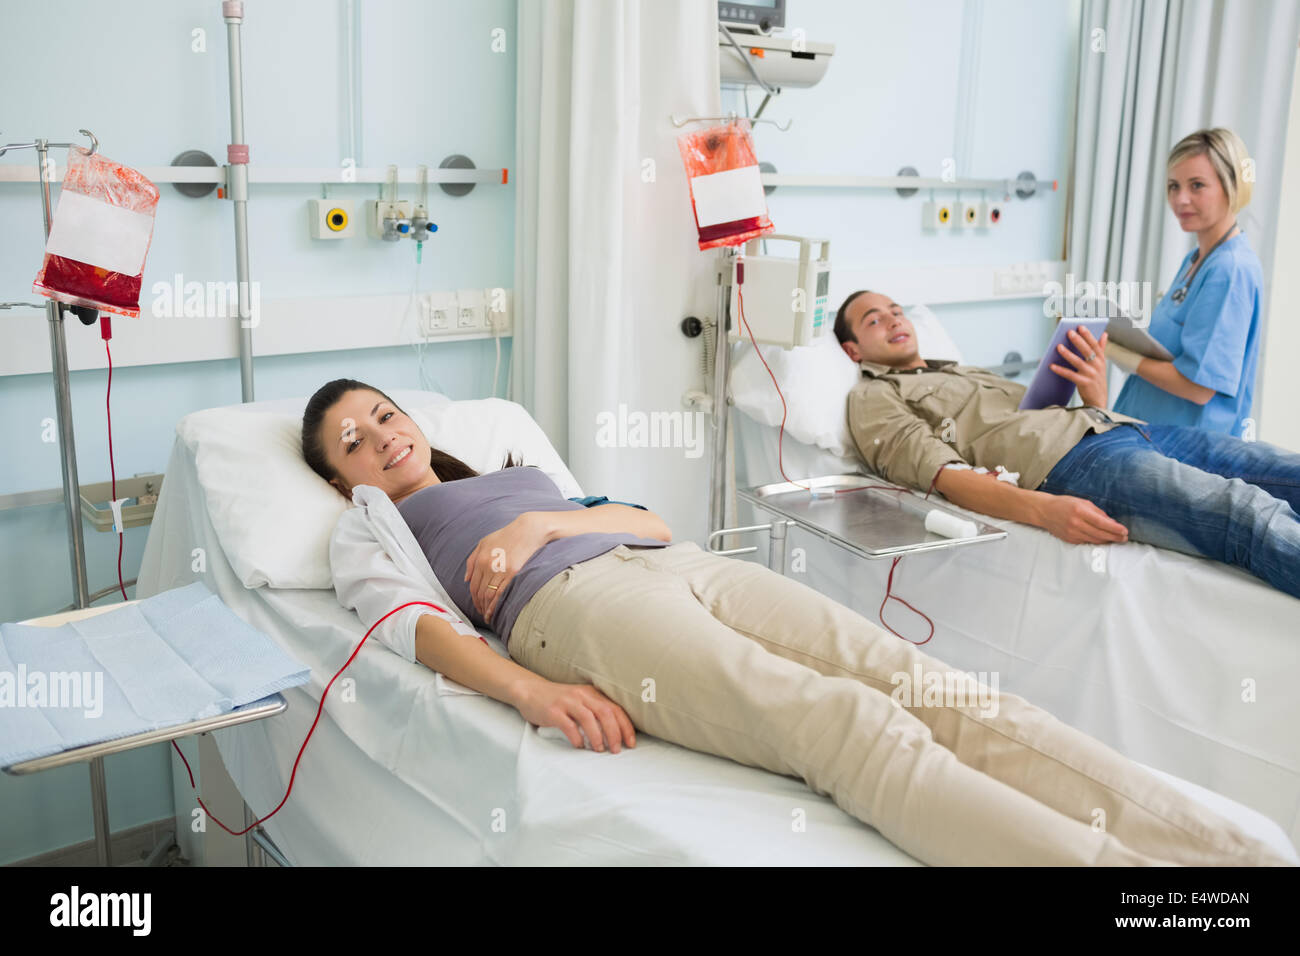 Узнать в какой больнице человек в москве. Пациент на кушетке в больнице. Пациент лежит на кушетке. Лежачие больные в терапии. Кушетка в больнице.